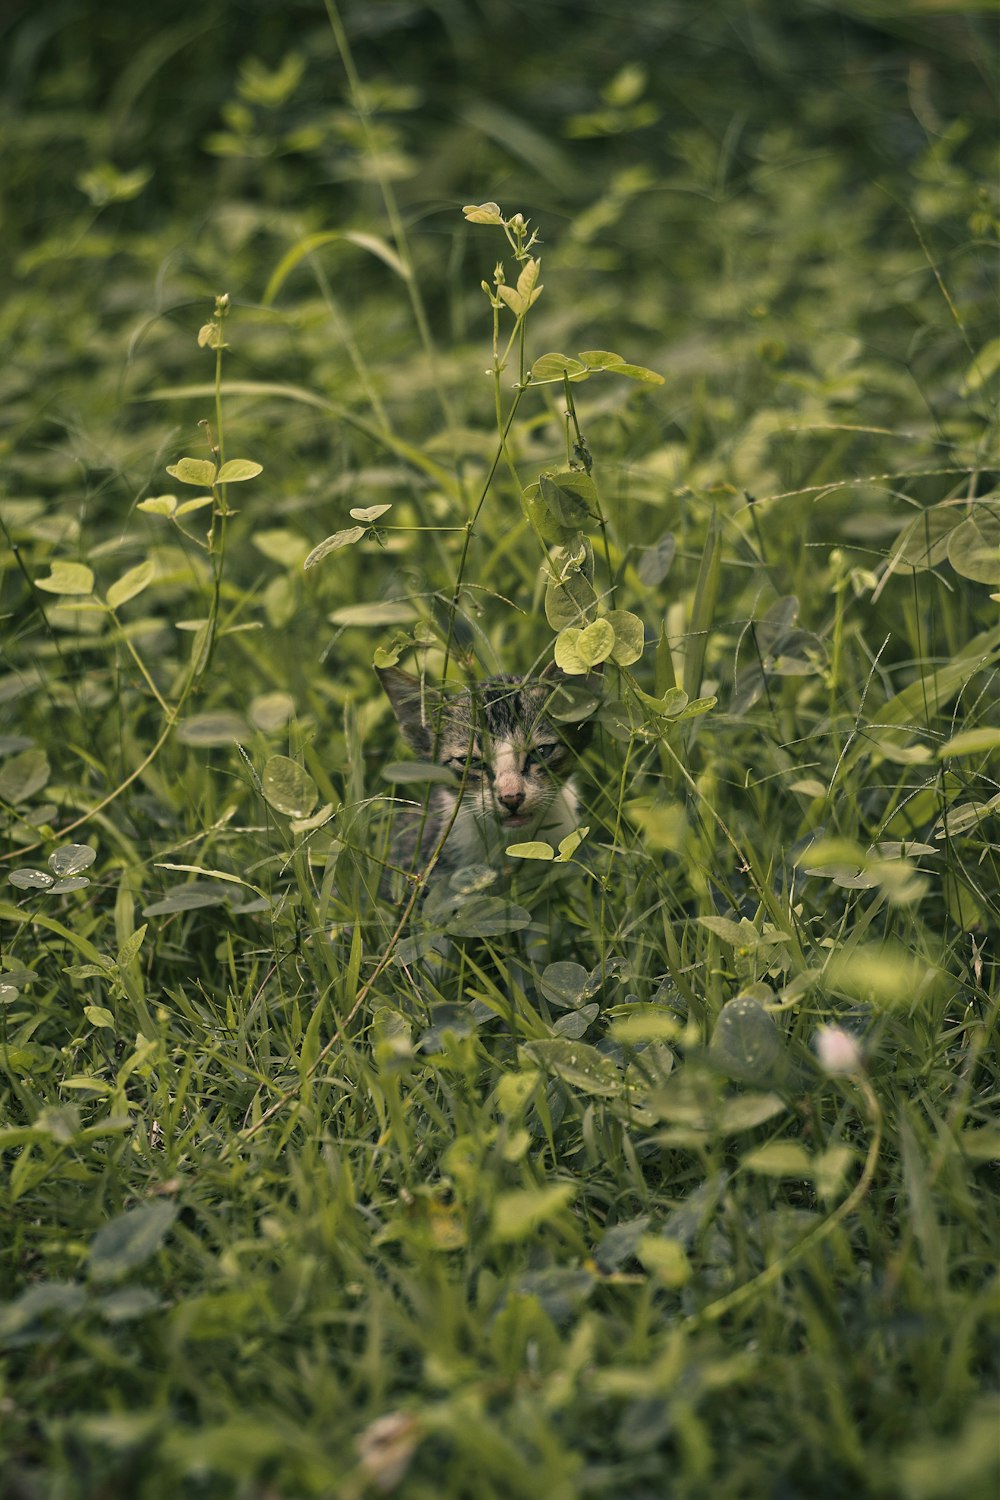 a cat in a grassy area